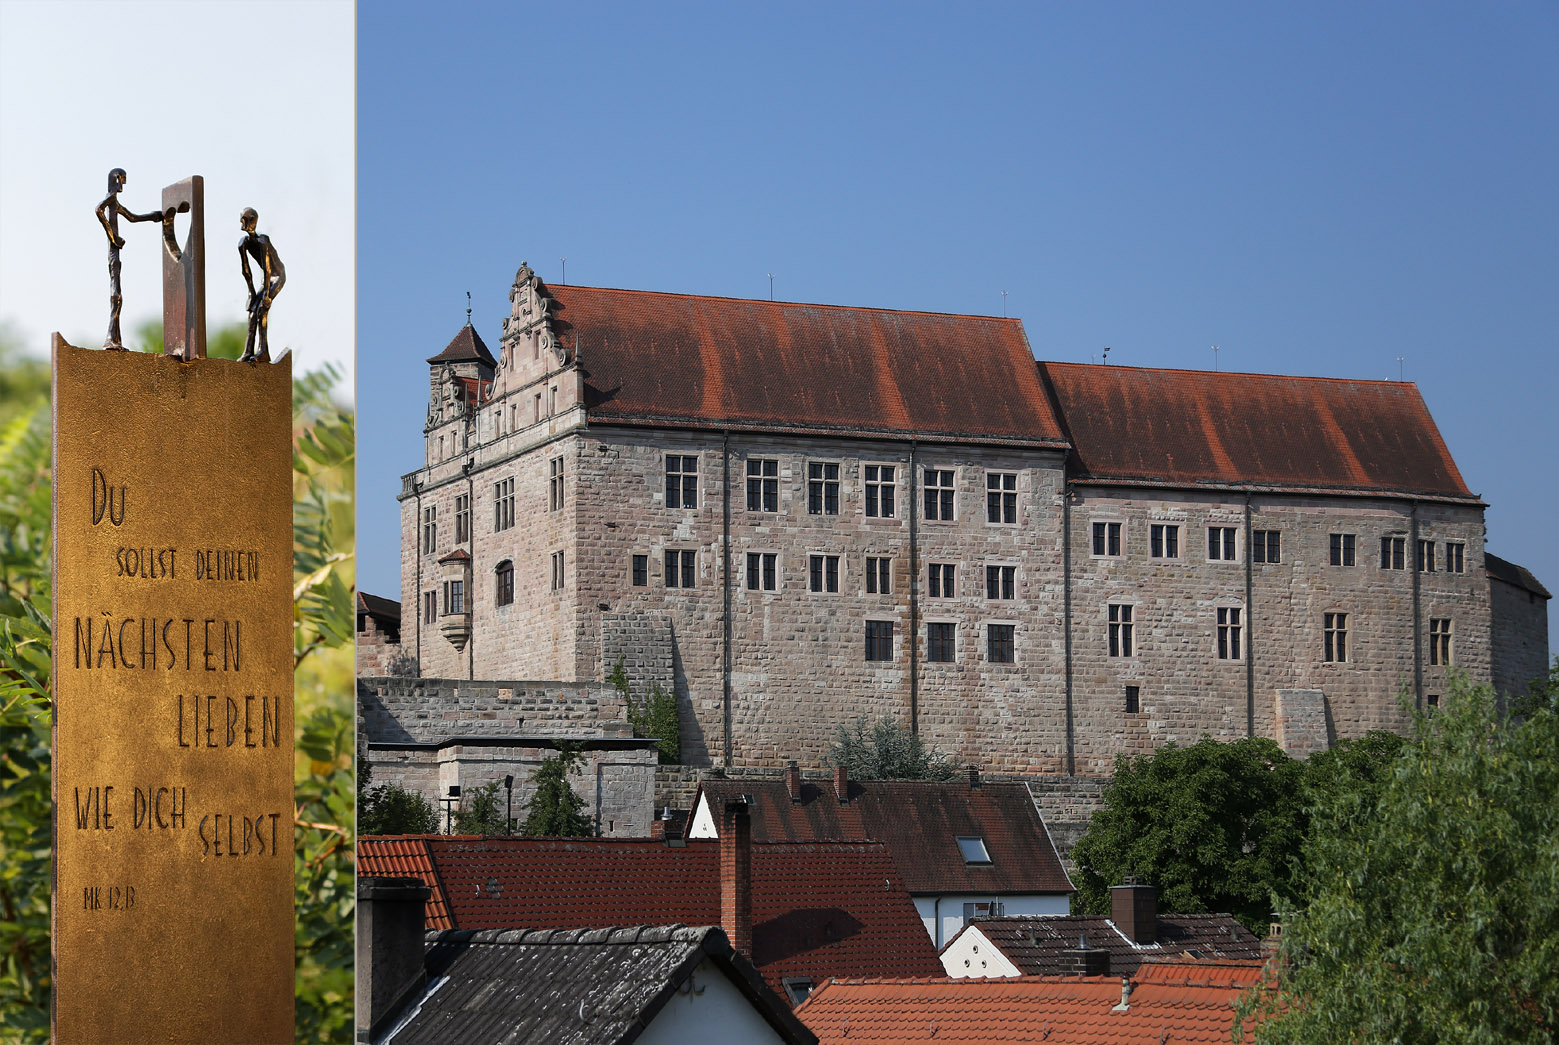 Stelen-Collage mit Cadolzburg